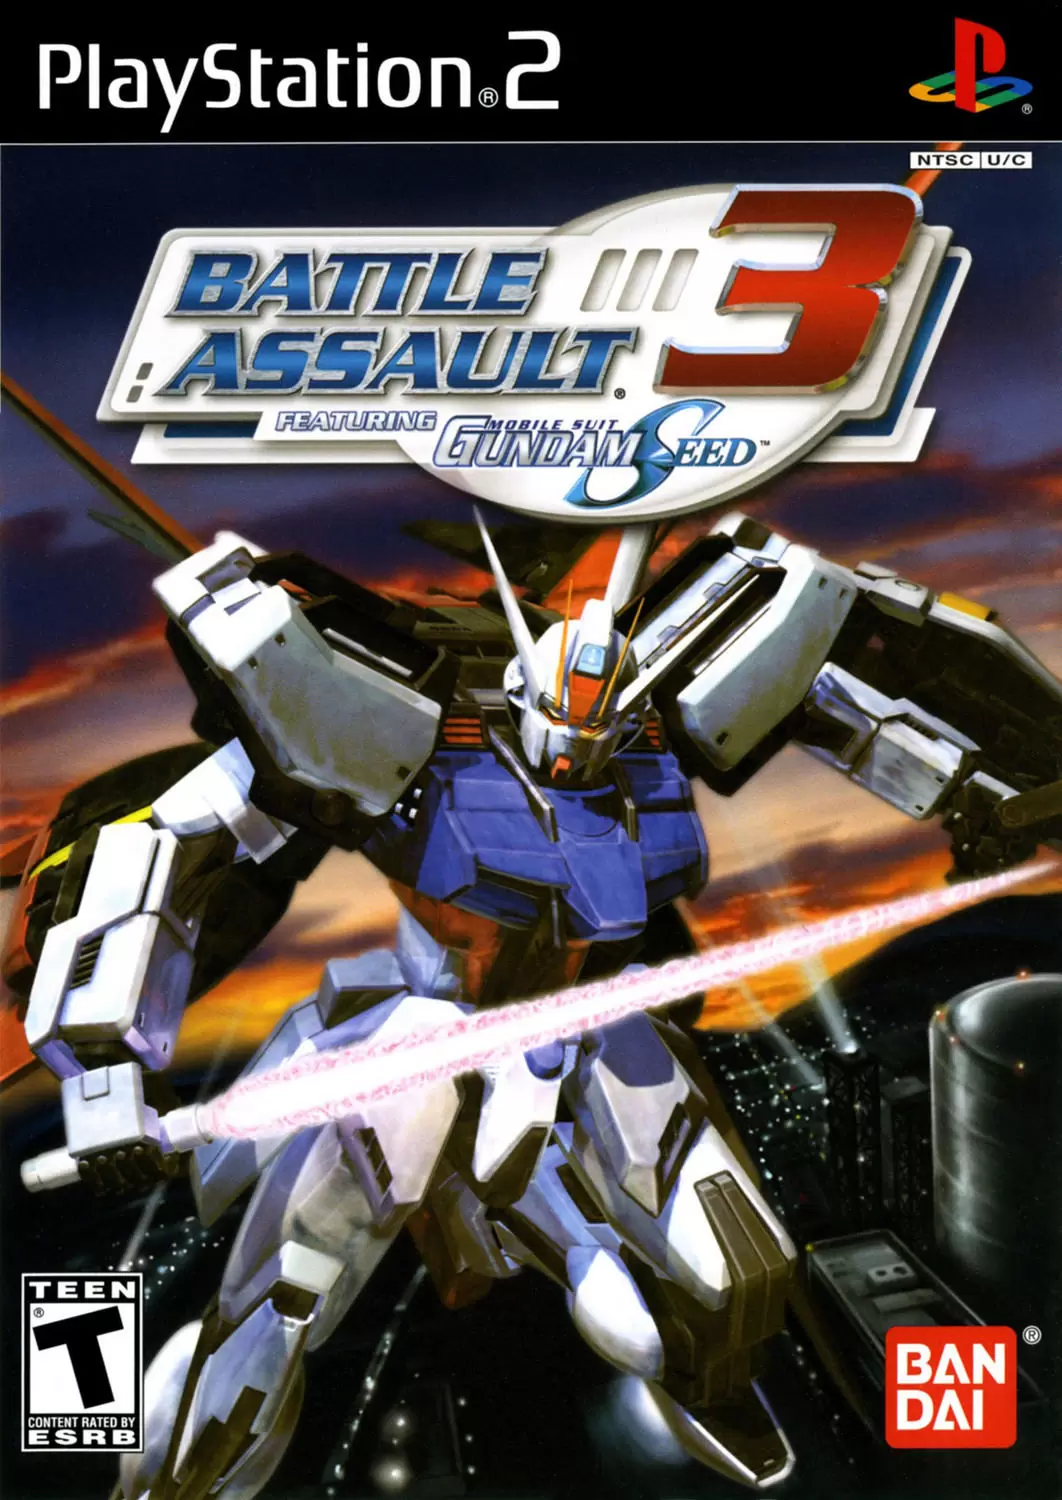 PS2 Games - Battle Assault 3 featuring Gundam Seed